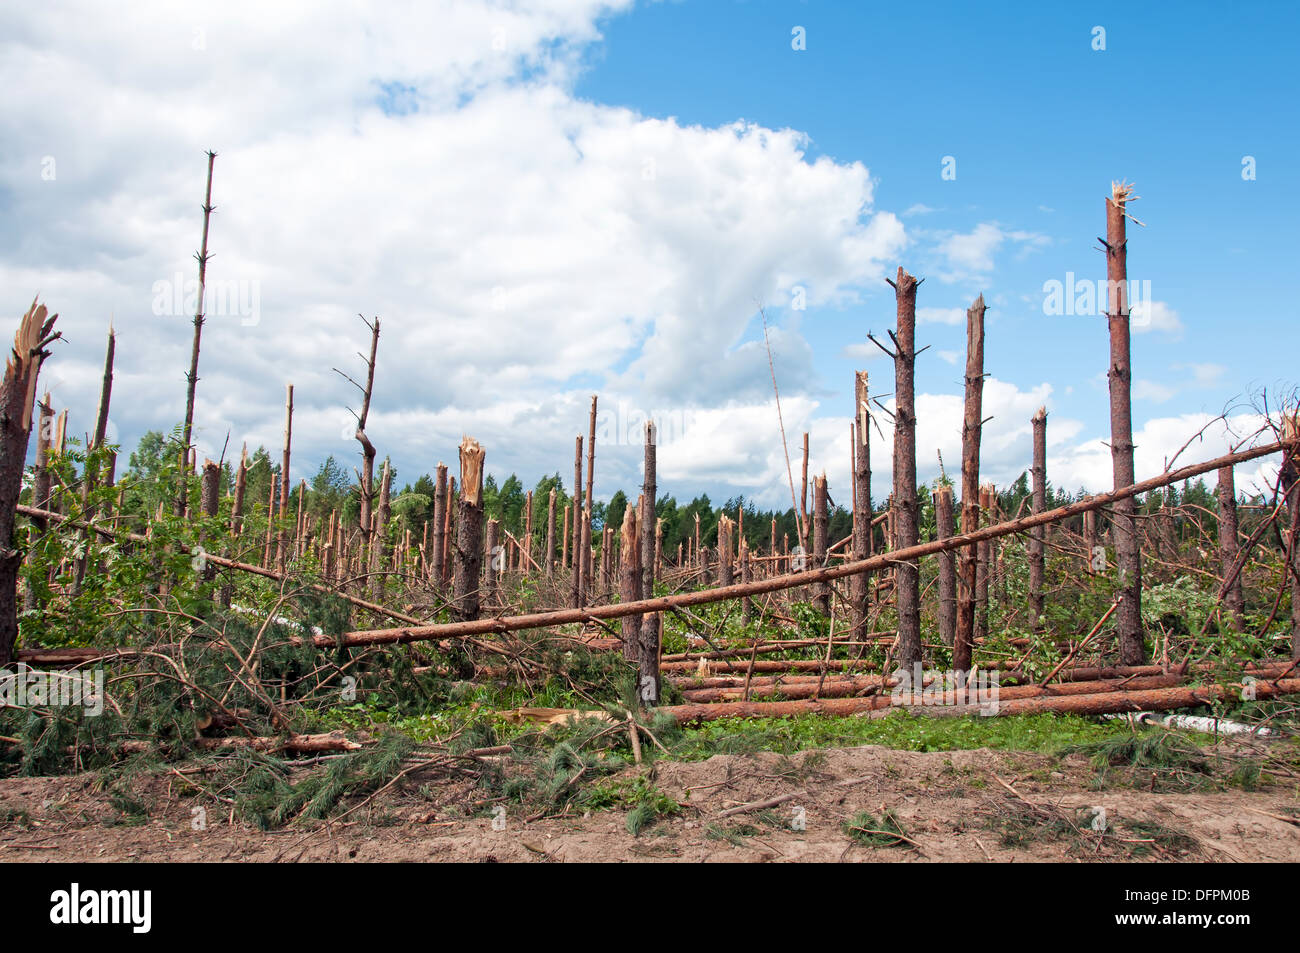 Le rotture di alberi dopo potente uragano Foto Stock